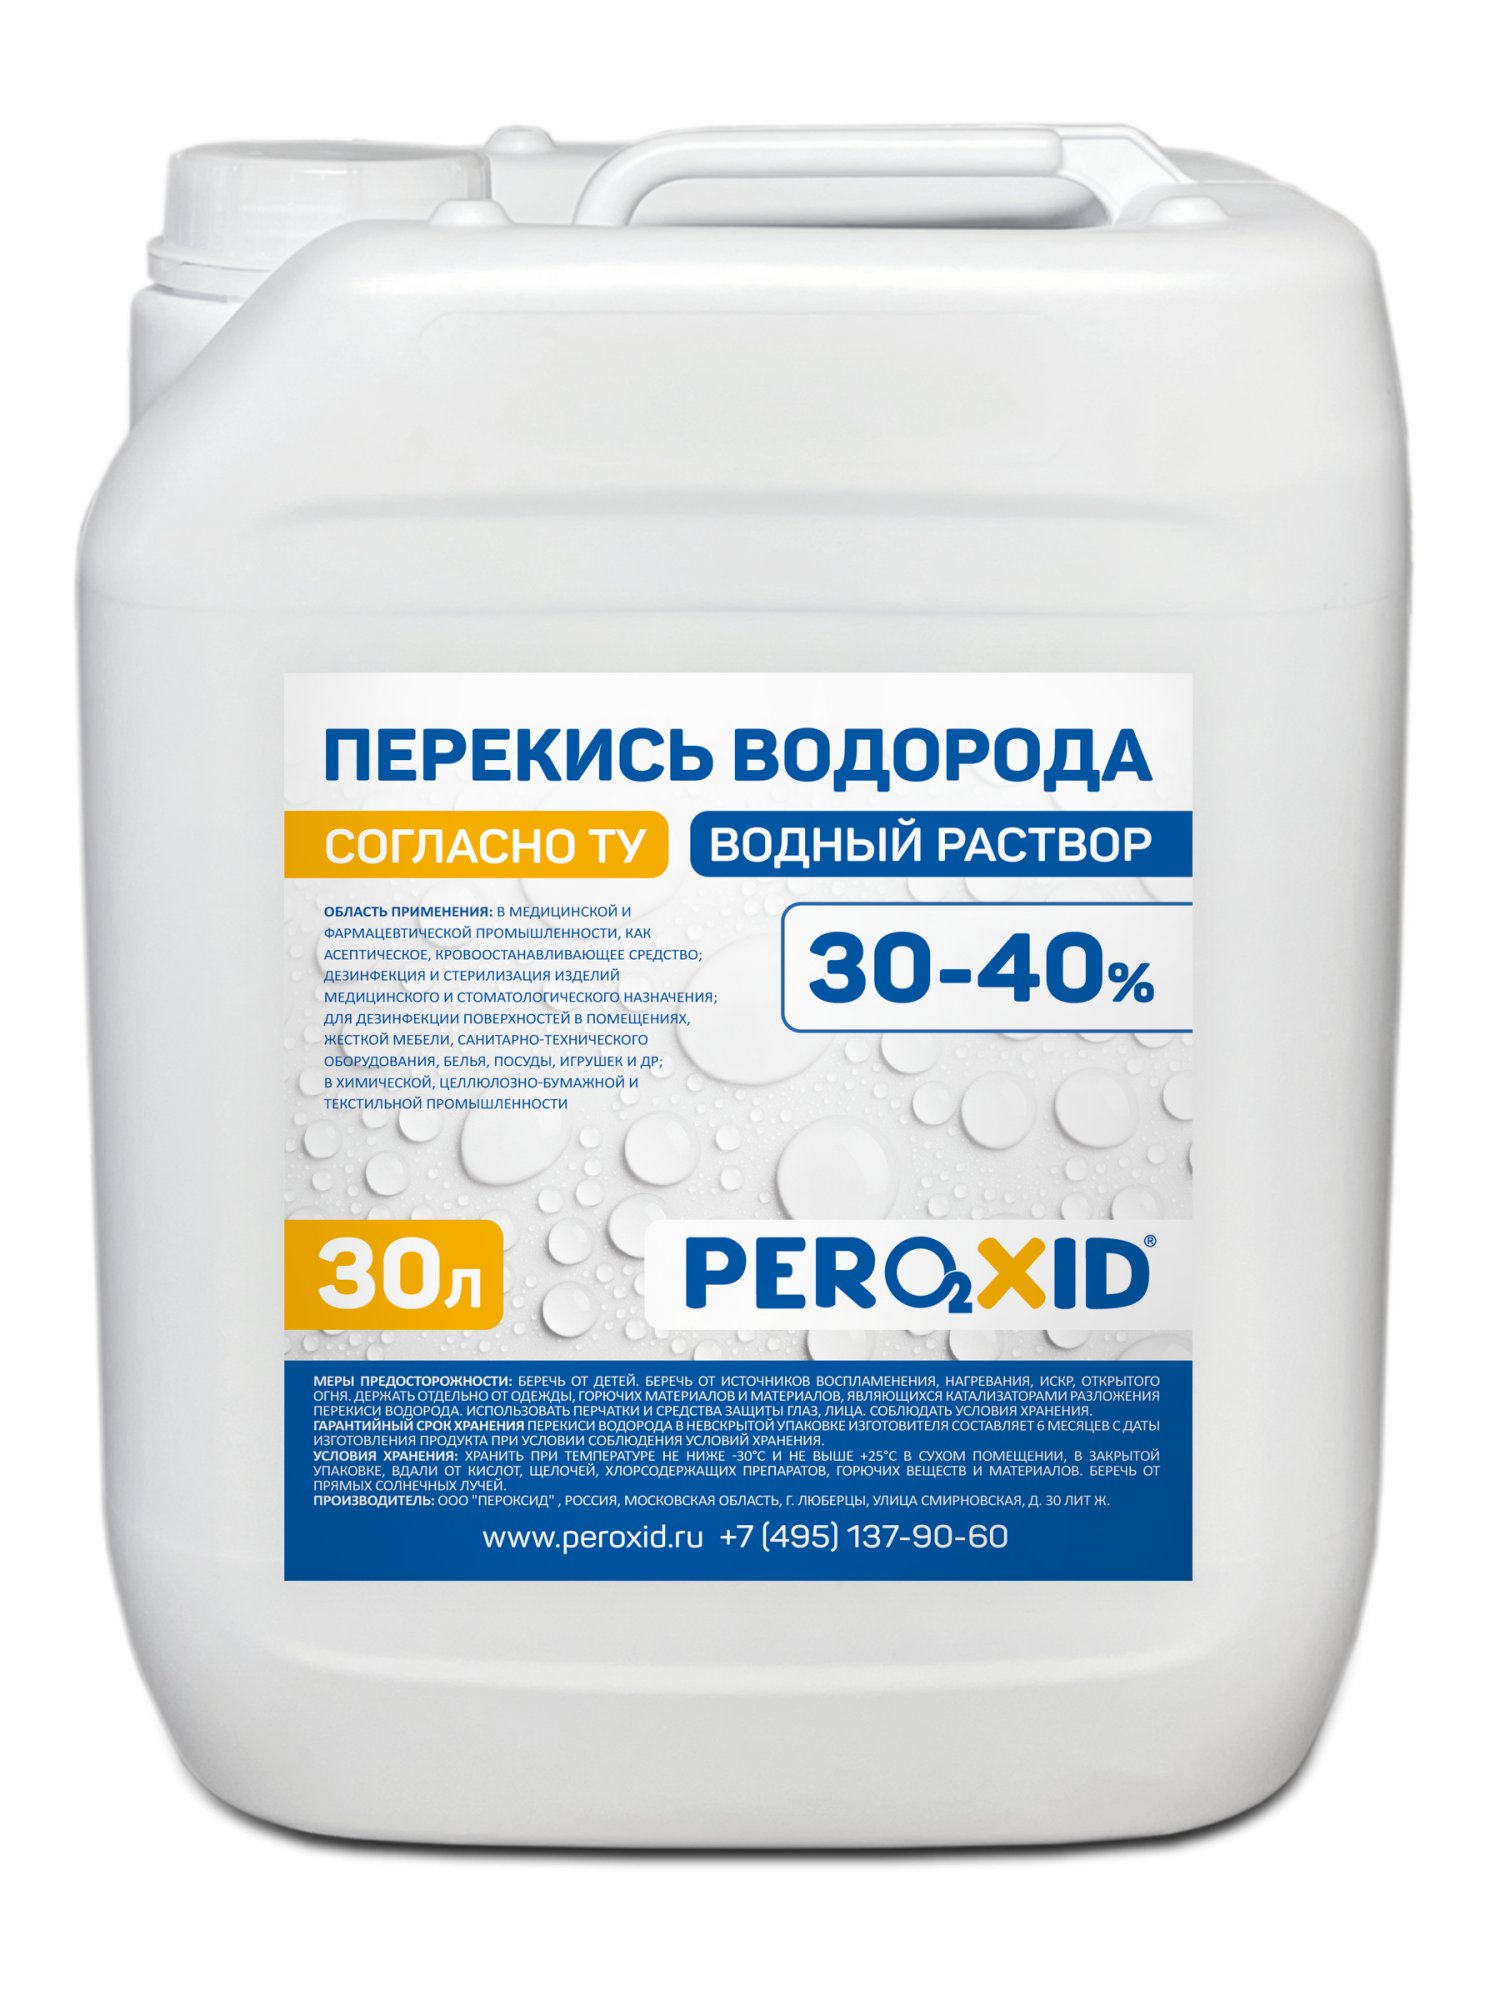 Перекись водорода водный раствор PEROXID 30-40% марка  ТУ 2123-001-25665344-2008 30 л/34 кг